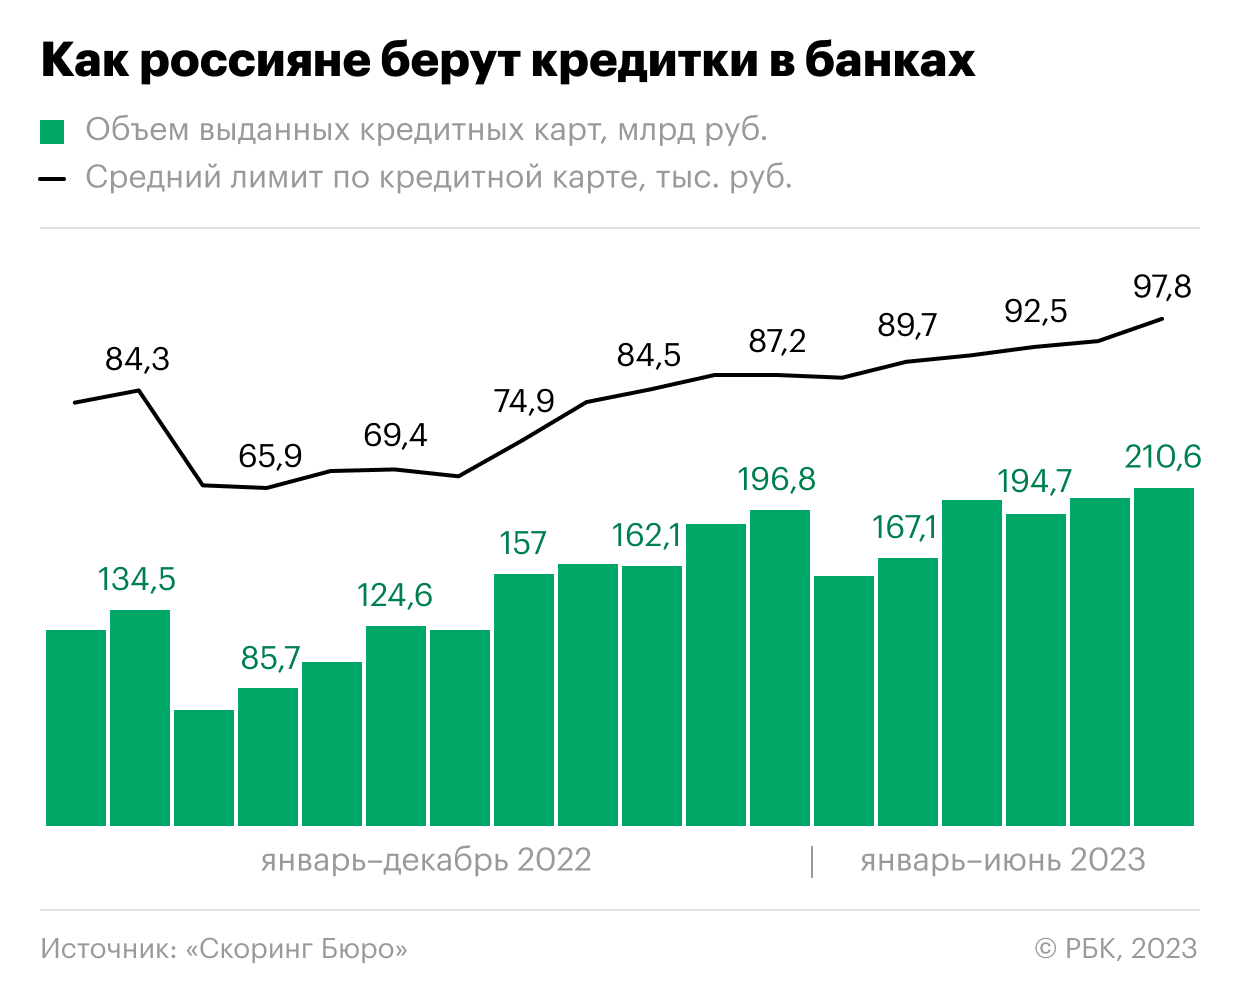 Средний лимит по кредиткам в России приблизился к ₽100 тыс.